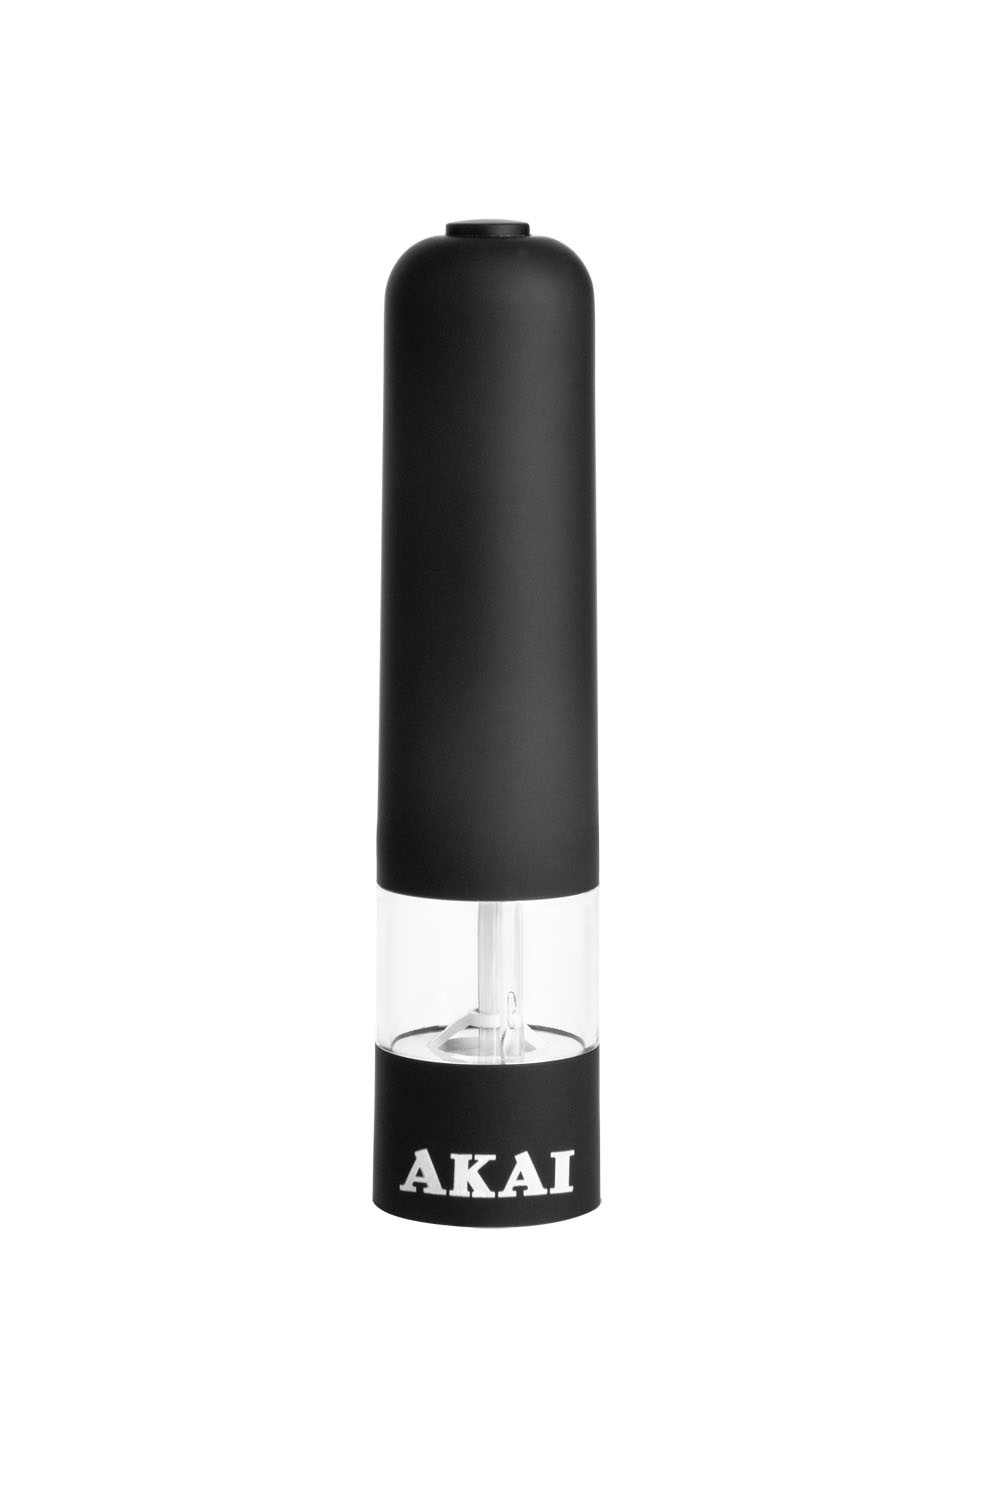 Измельчитель для специй AKAI GP - 1508 BL, цвет: черный